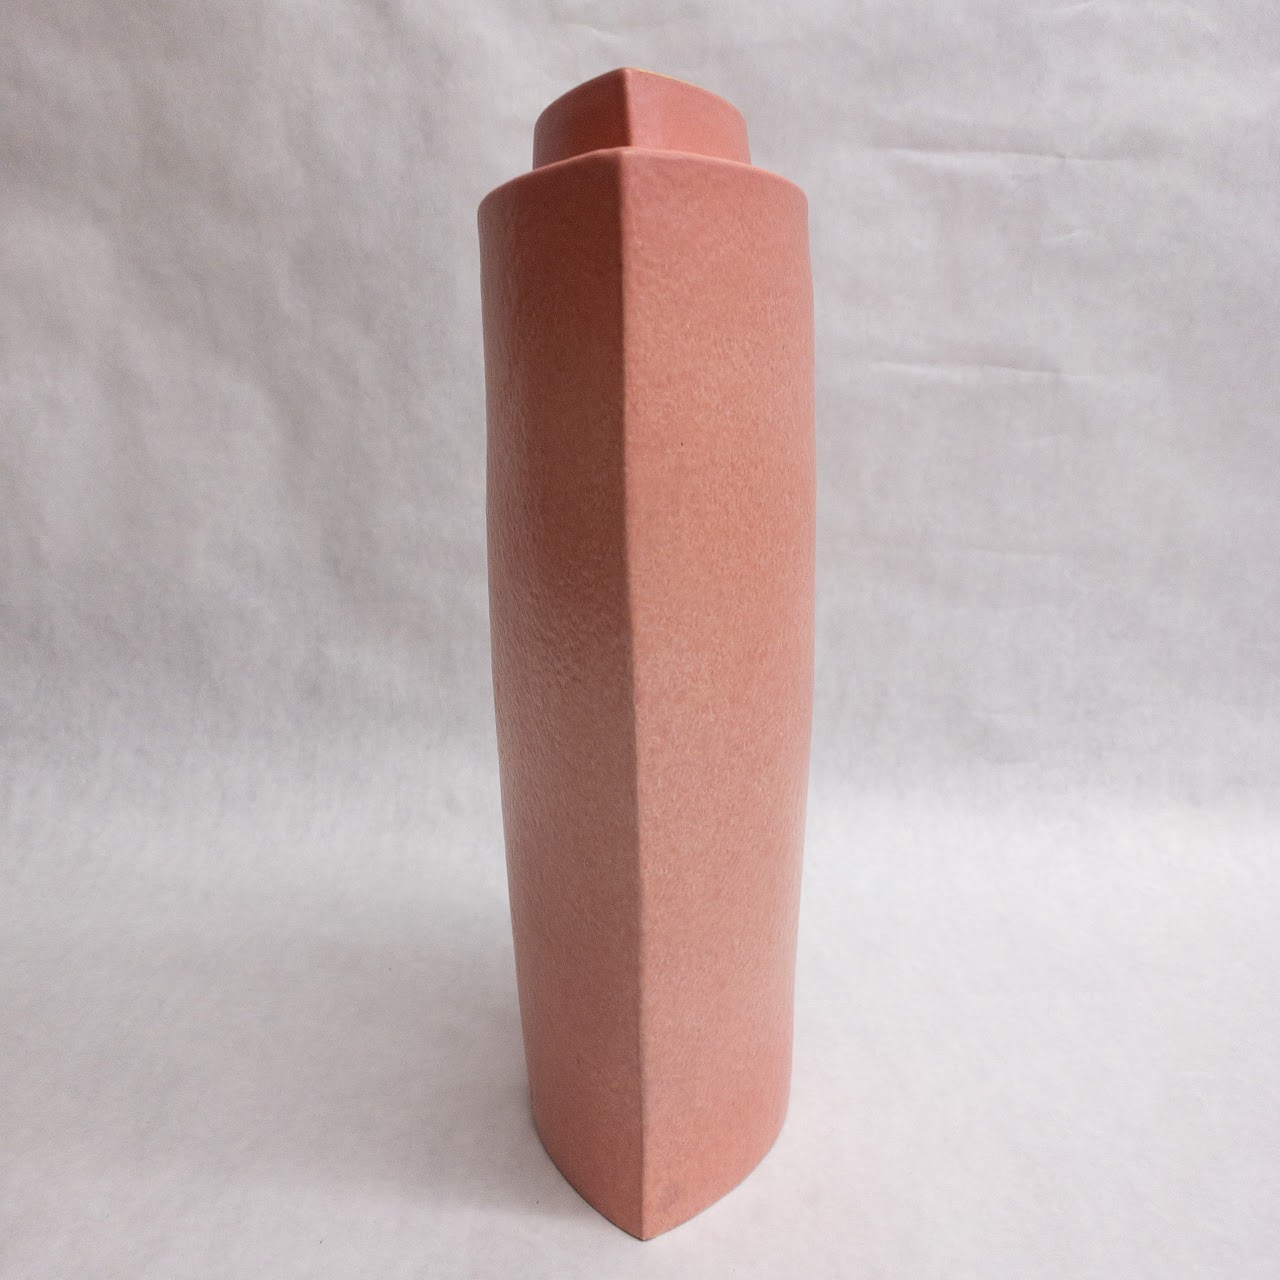 Signed Pink Ceramic Modernist Vase